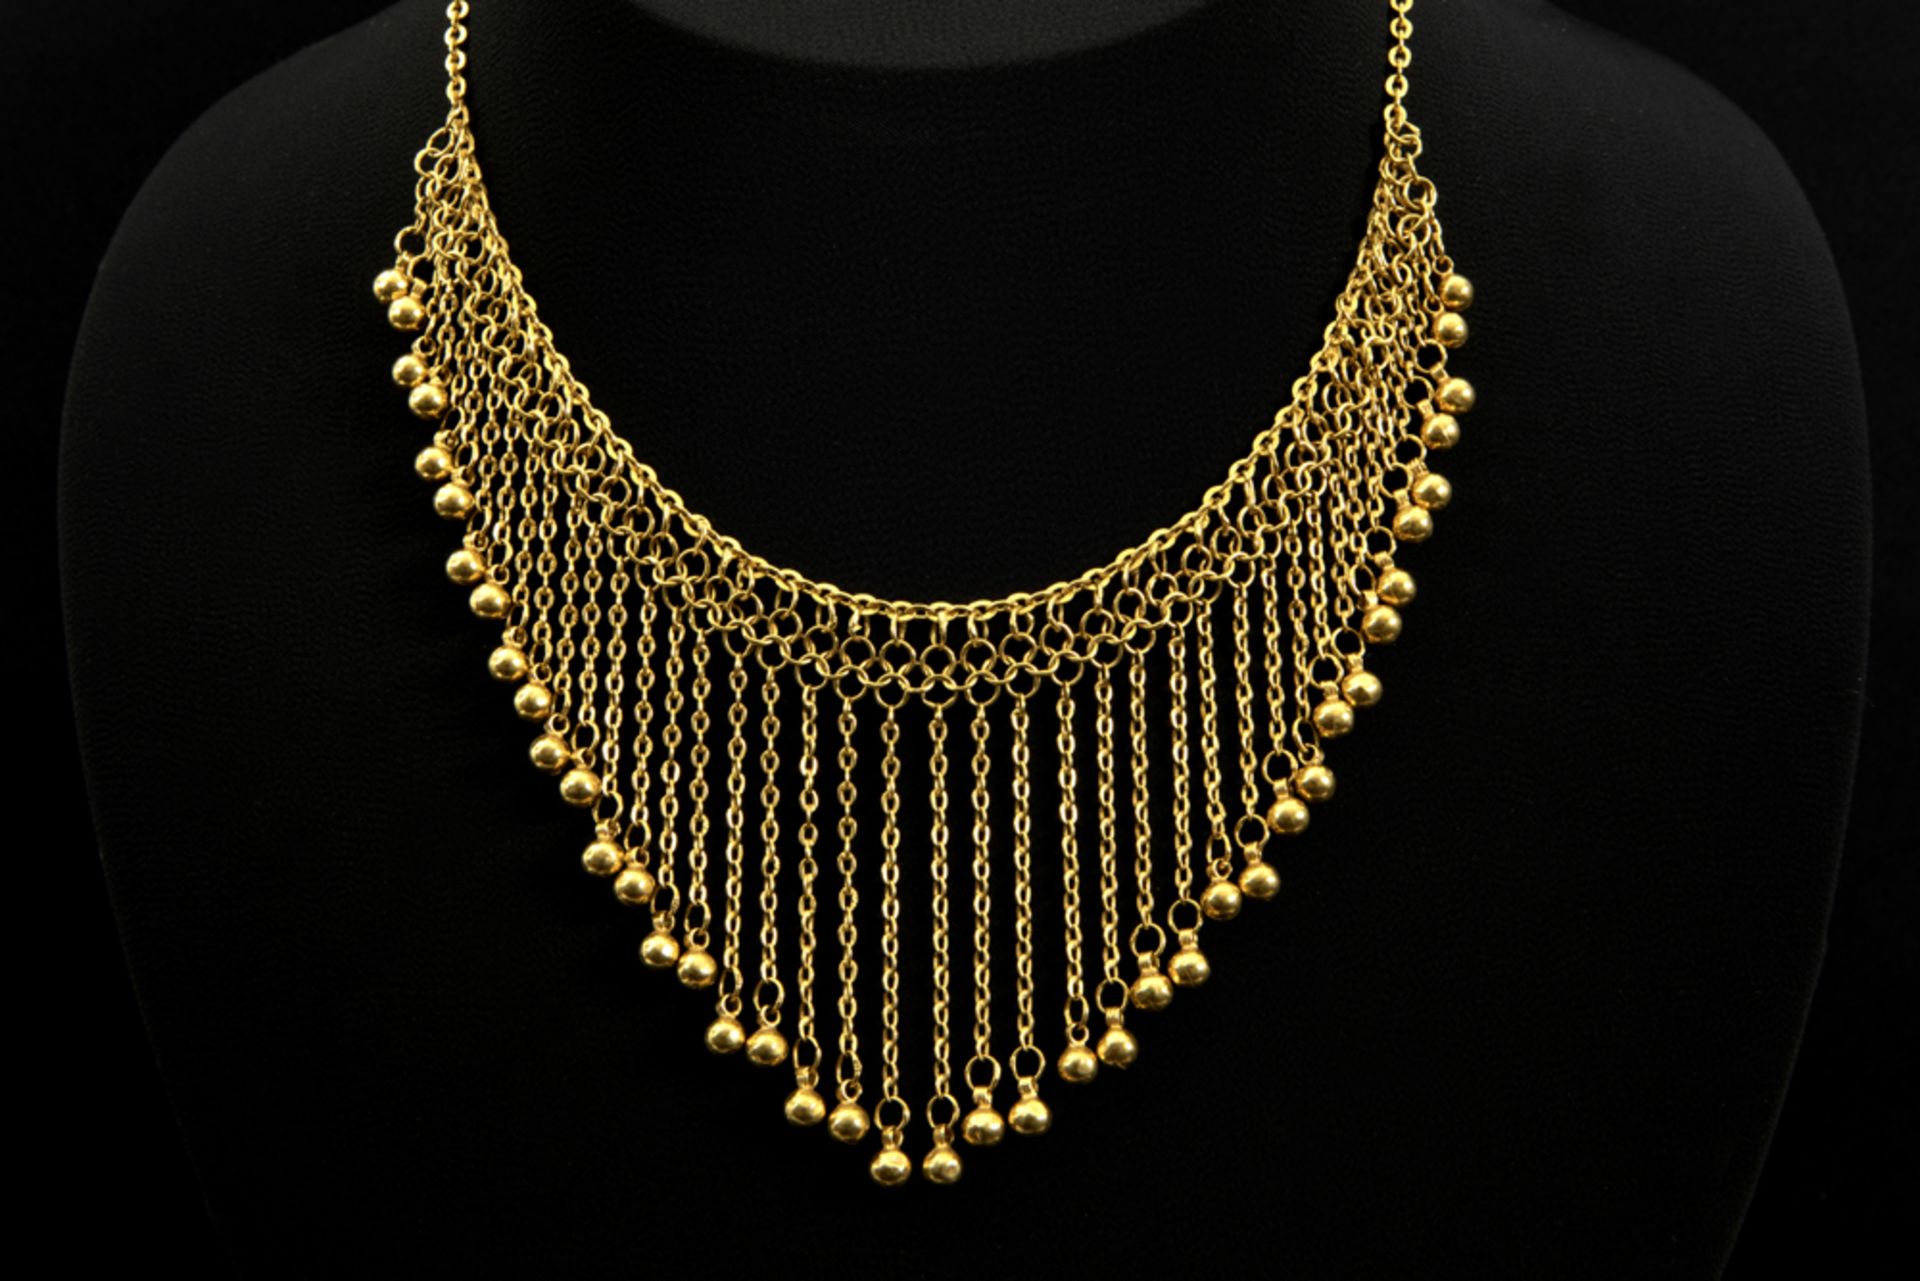 necklace in yellow gold (18 carat) || Collier in geelgoud (18 karaat) met een sierstuk met floches -